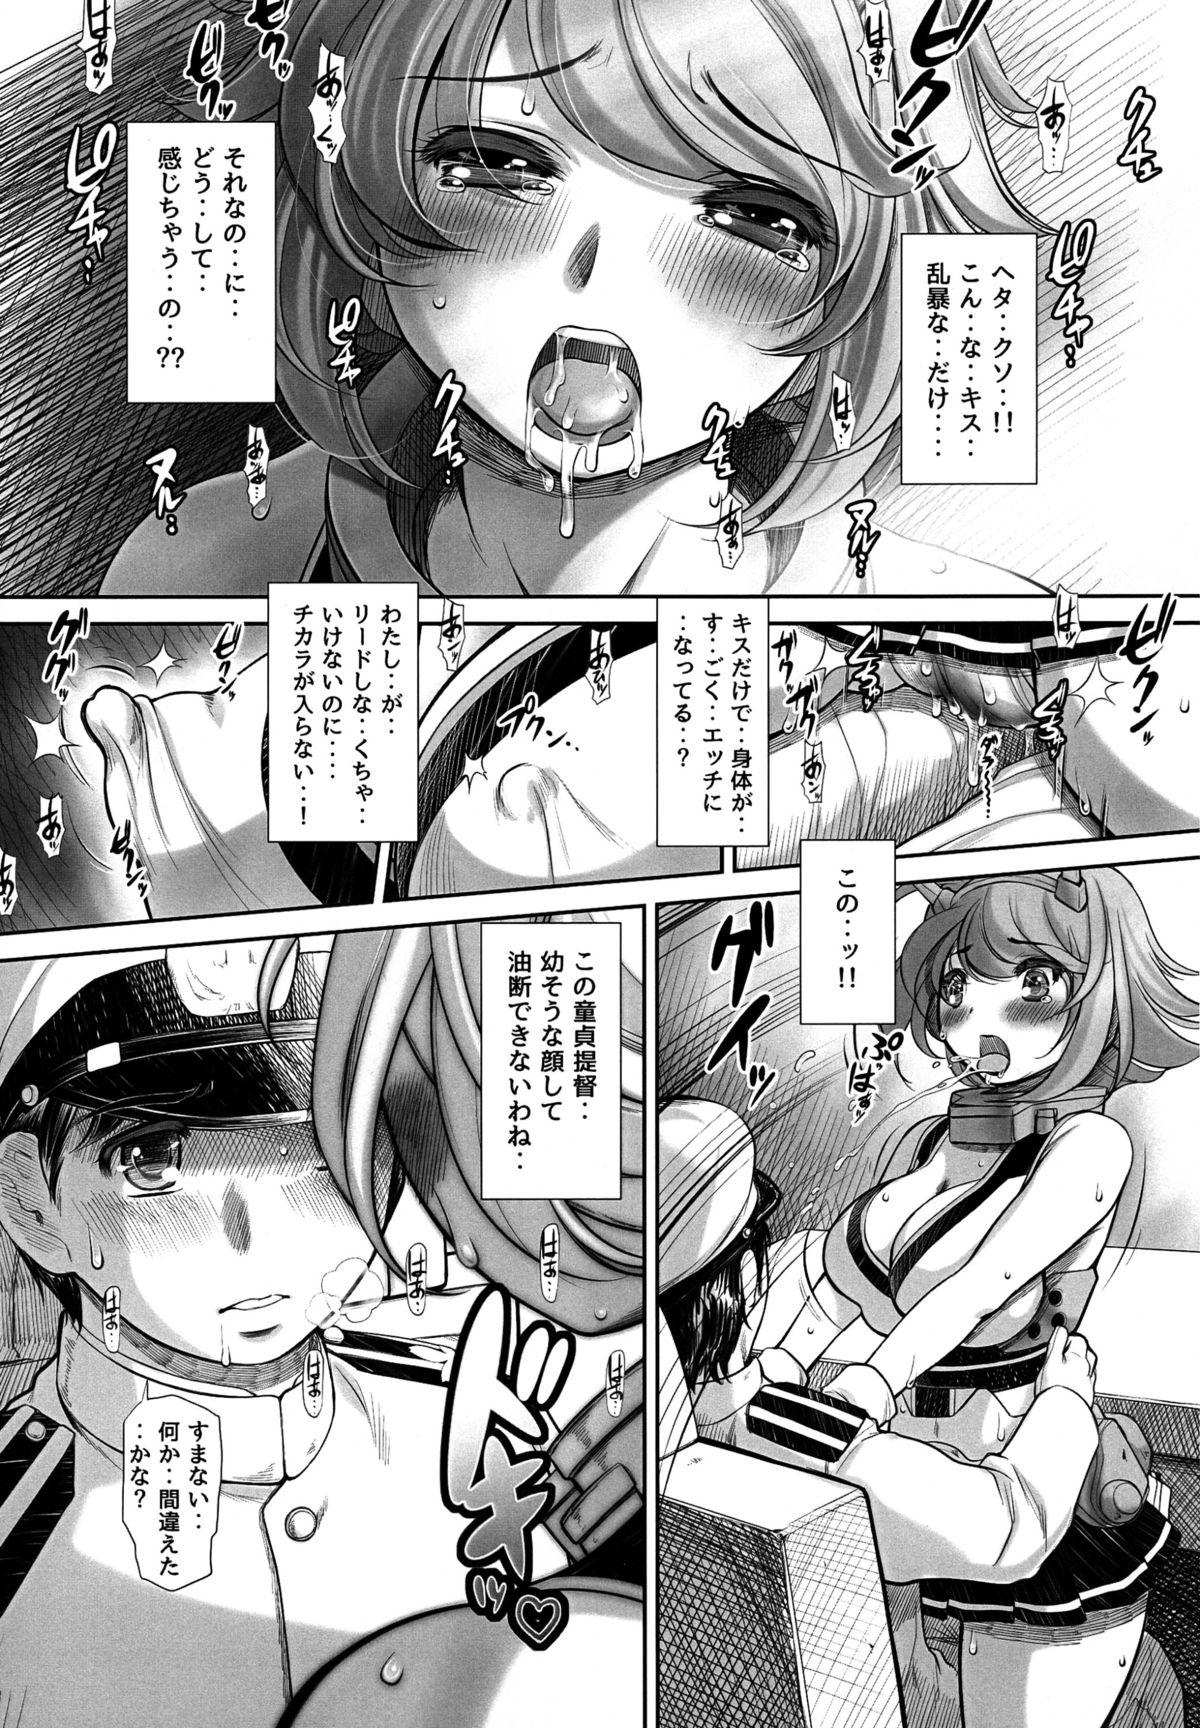 Sissy Doutei ga Yurusareru no wa Shousa made dayo ne? - Kantai collection Pussyfucking - Page 9